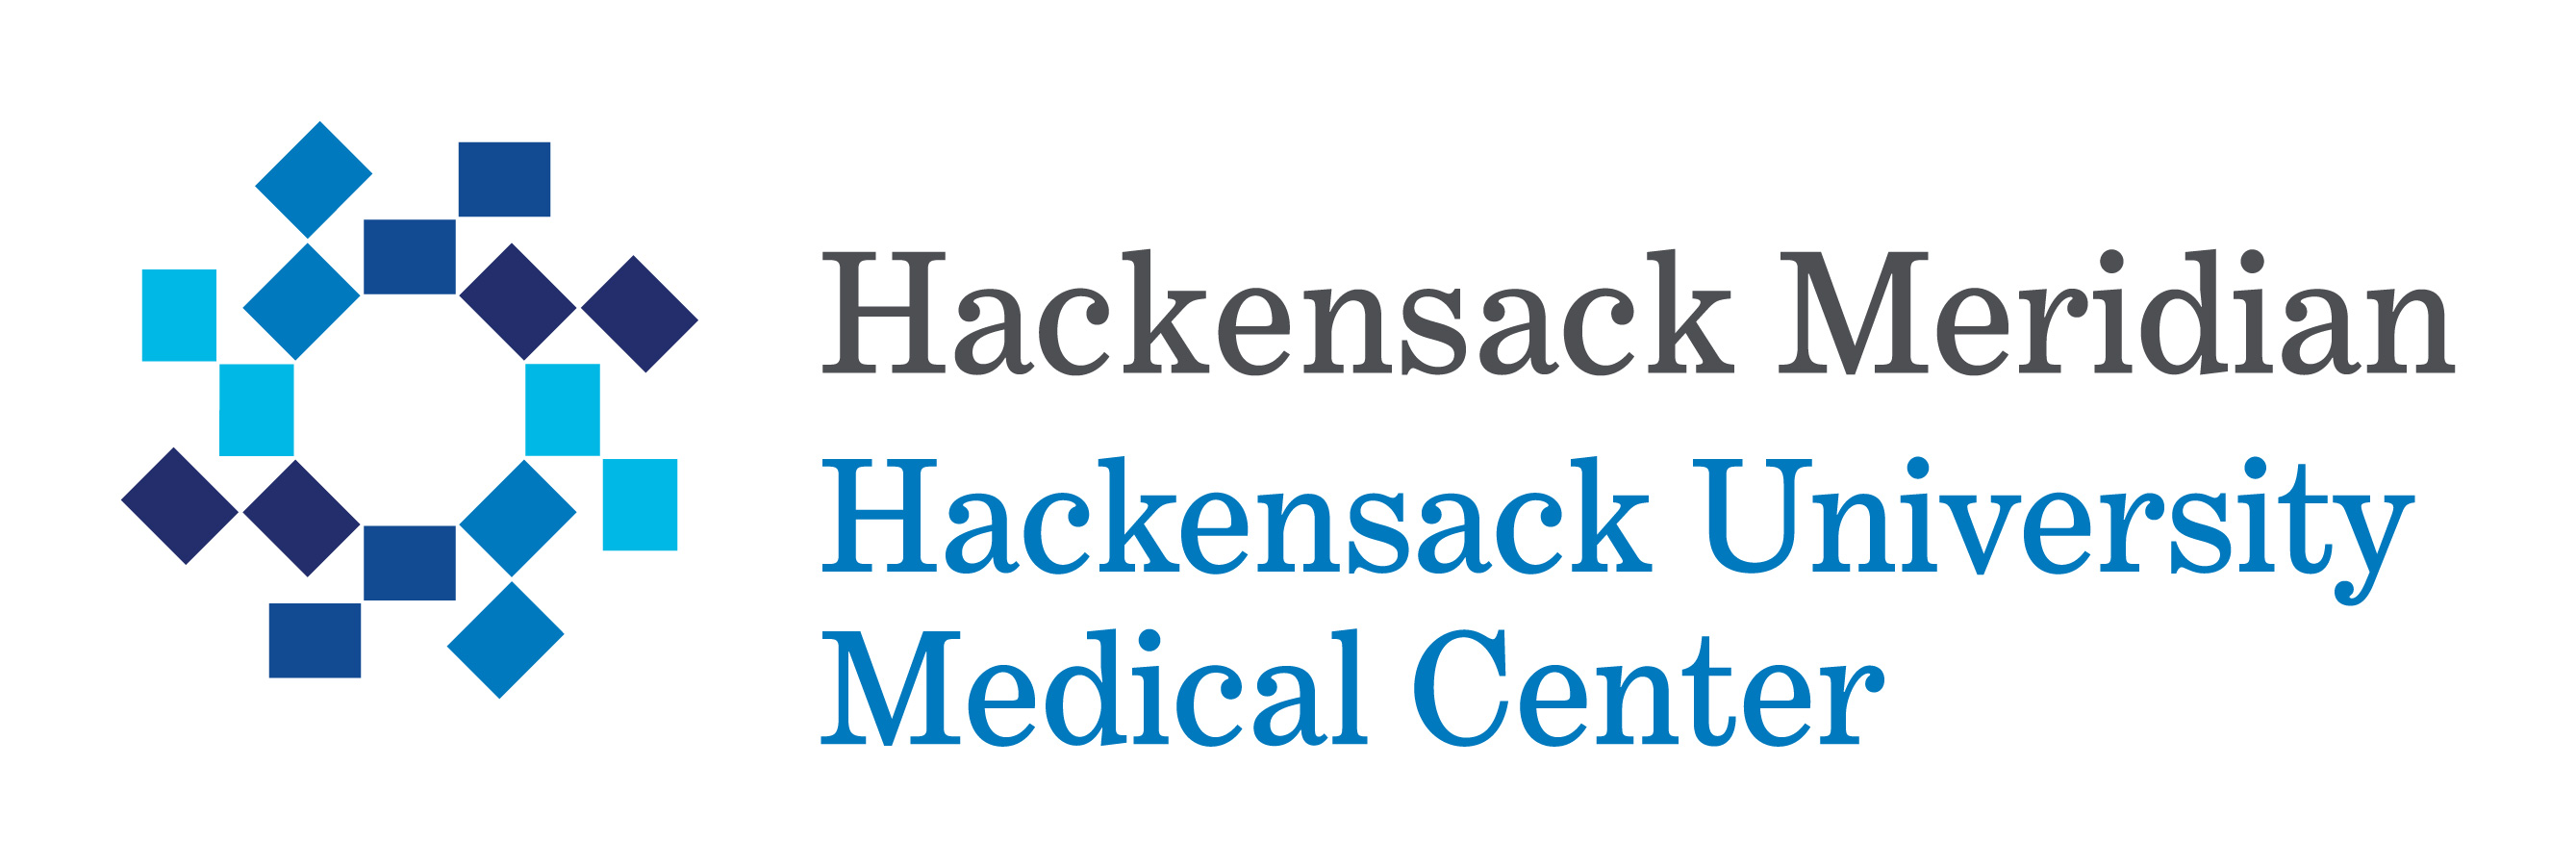 hackensack